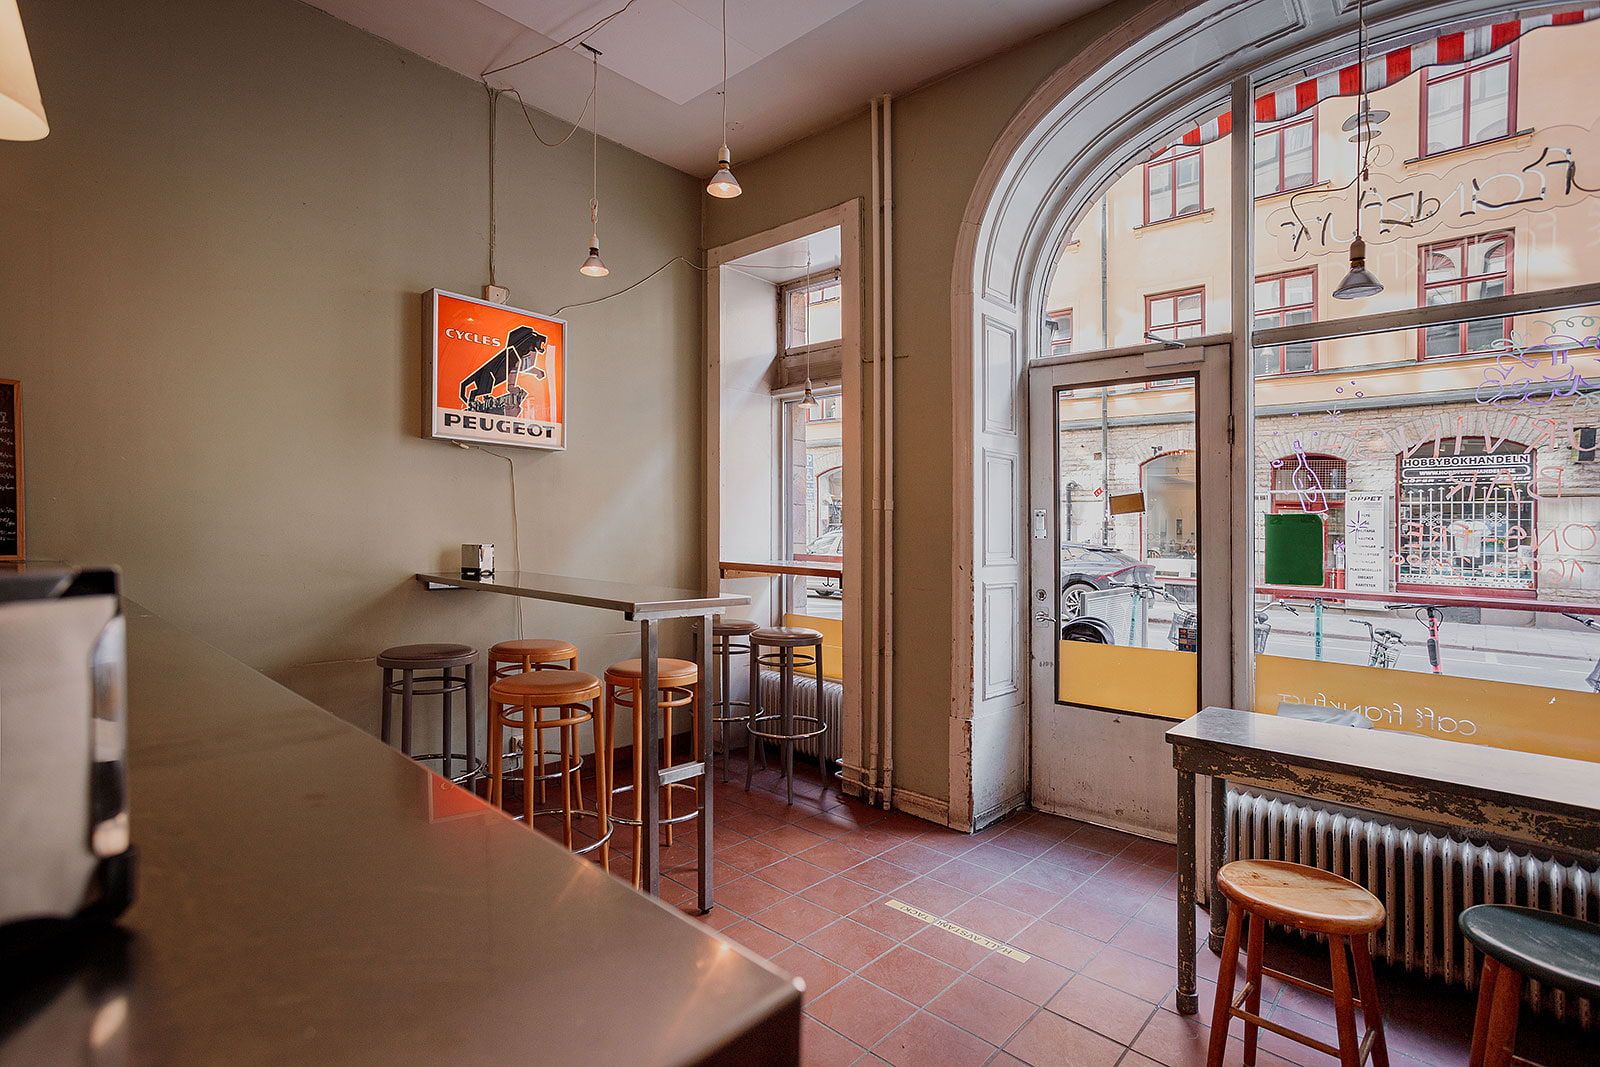 Café Frankfurt – Kungsholmens bästa restauranger